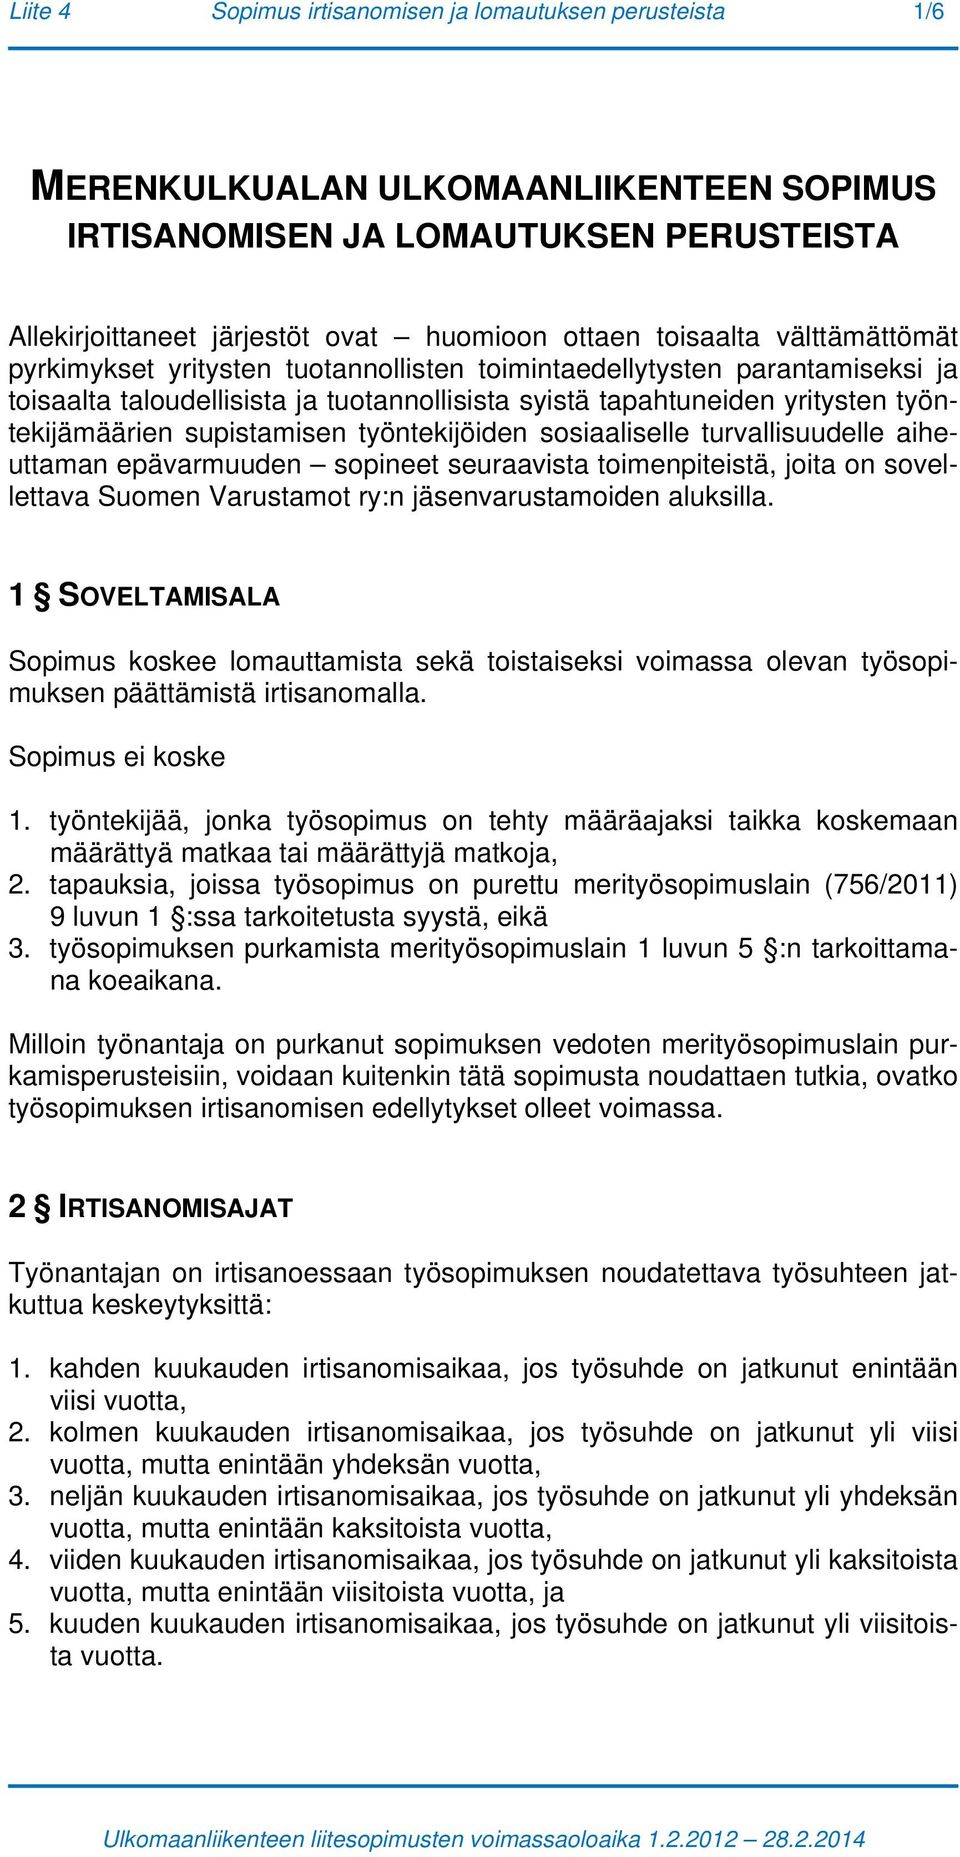 supistamisen työntekijöiden sosiaaliselle turvallisuudelle aiheuttaman epävarmuuden sopineet seuraavista toimenpiteistä, joita on sovellettava Suomen Varustamot ry:n jäsenvarustamoiden aluksilla.